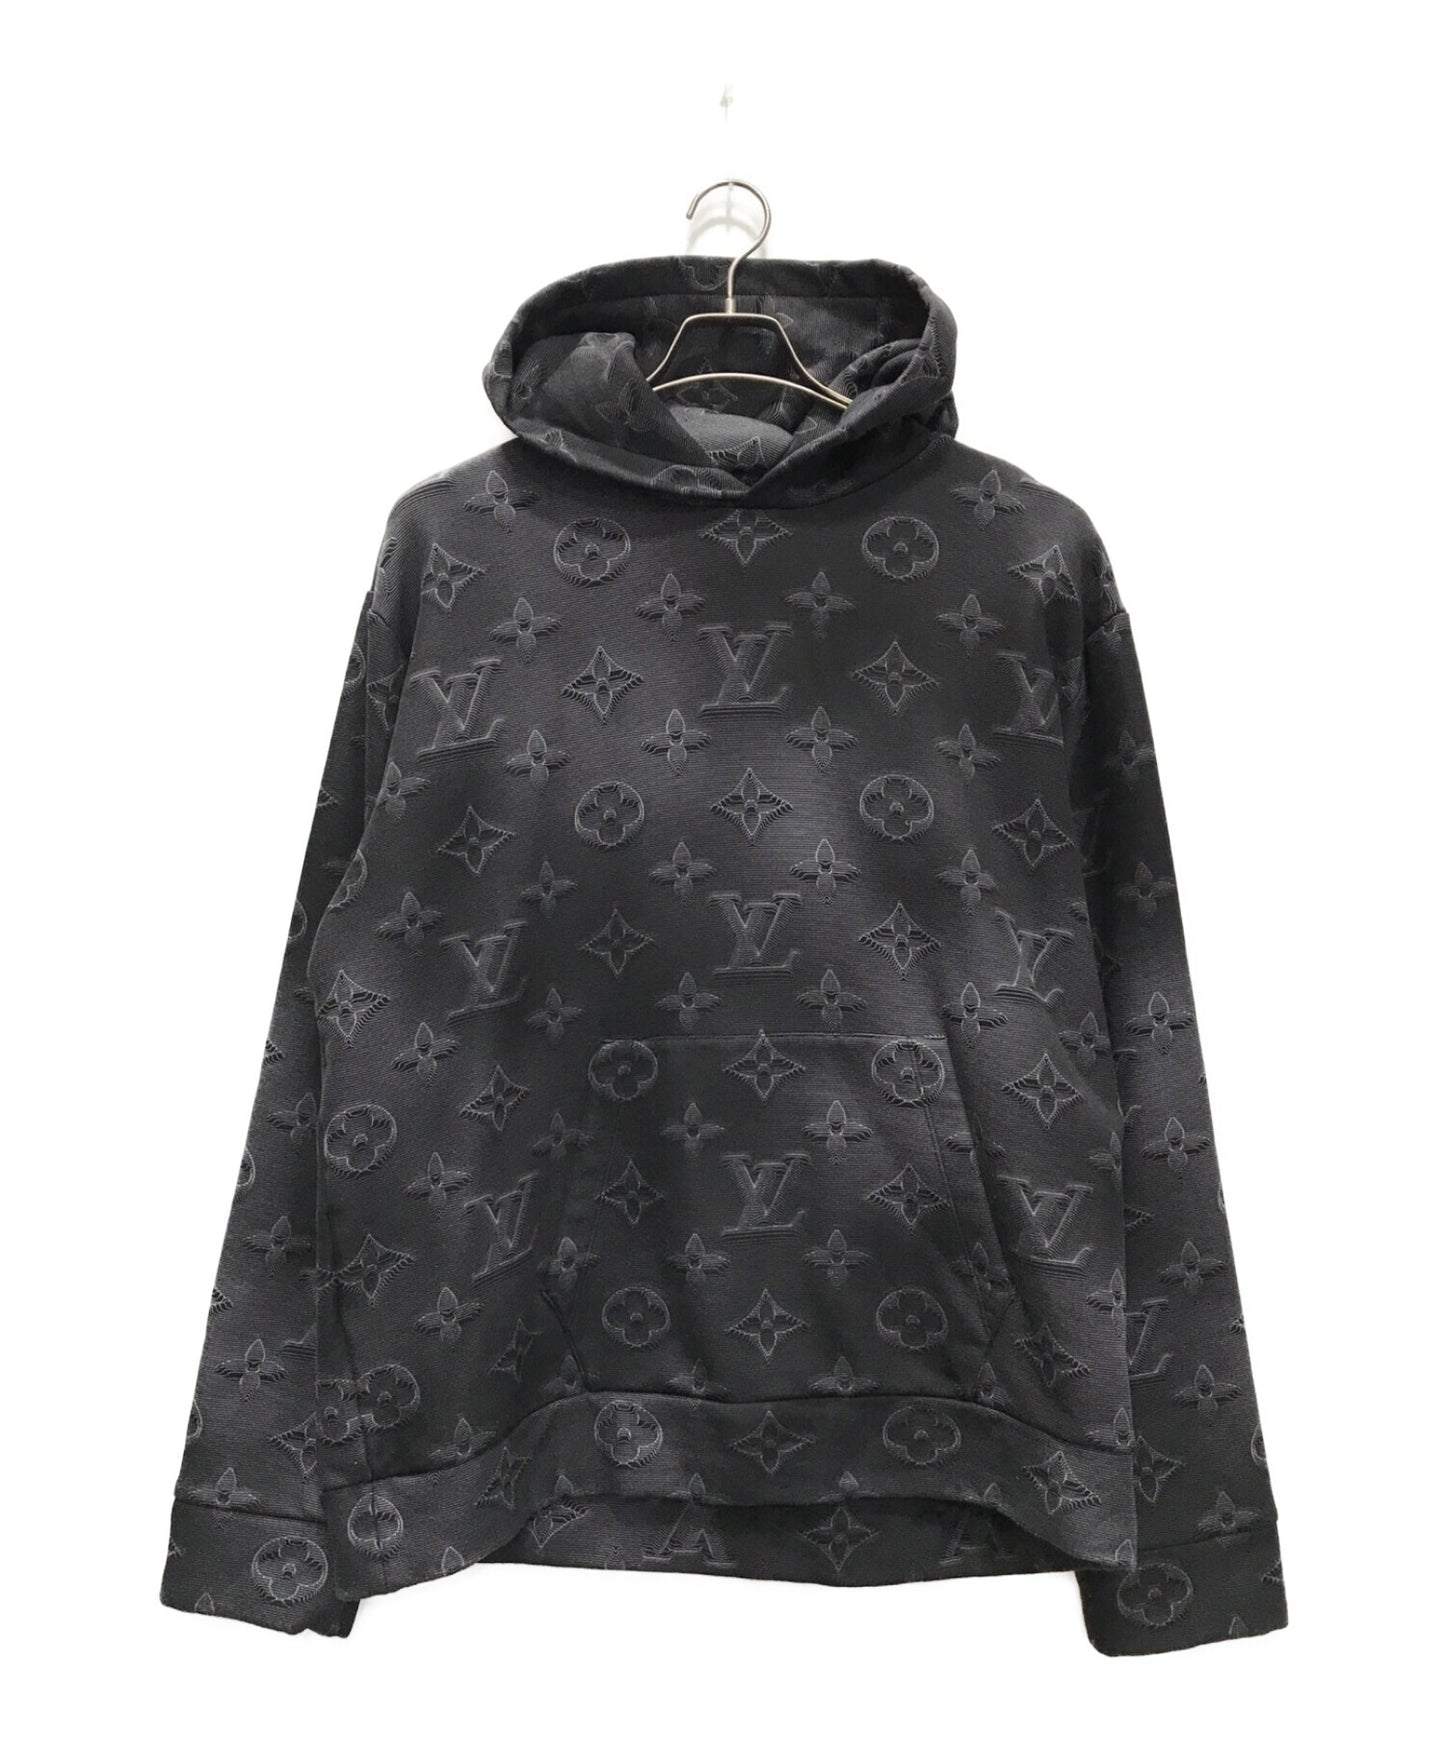 Louis Vuitton Monogram Hooded Cape